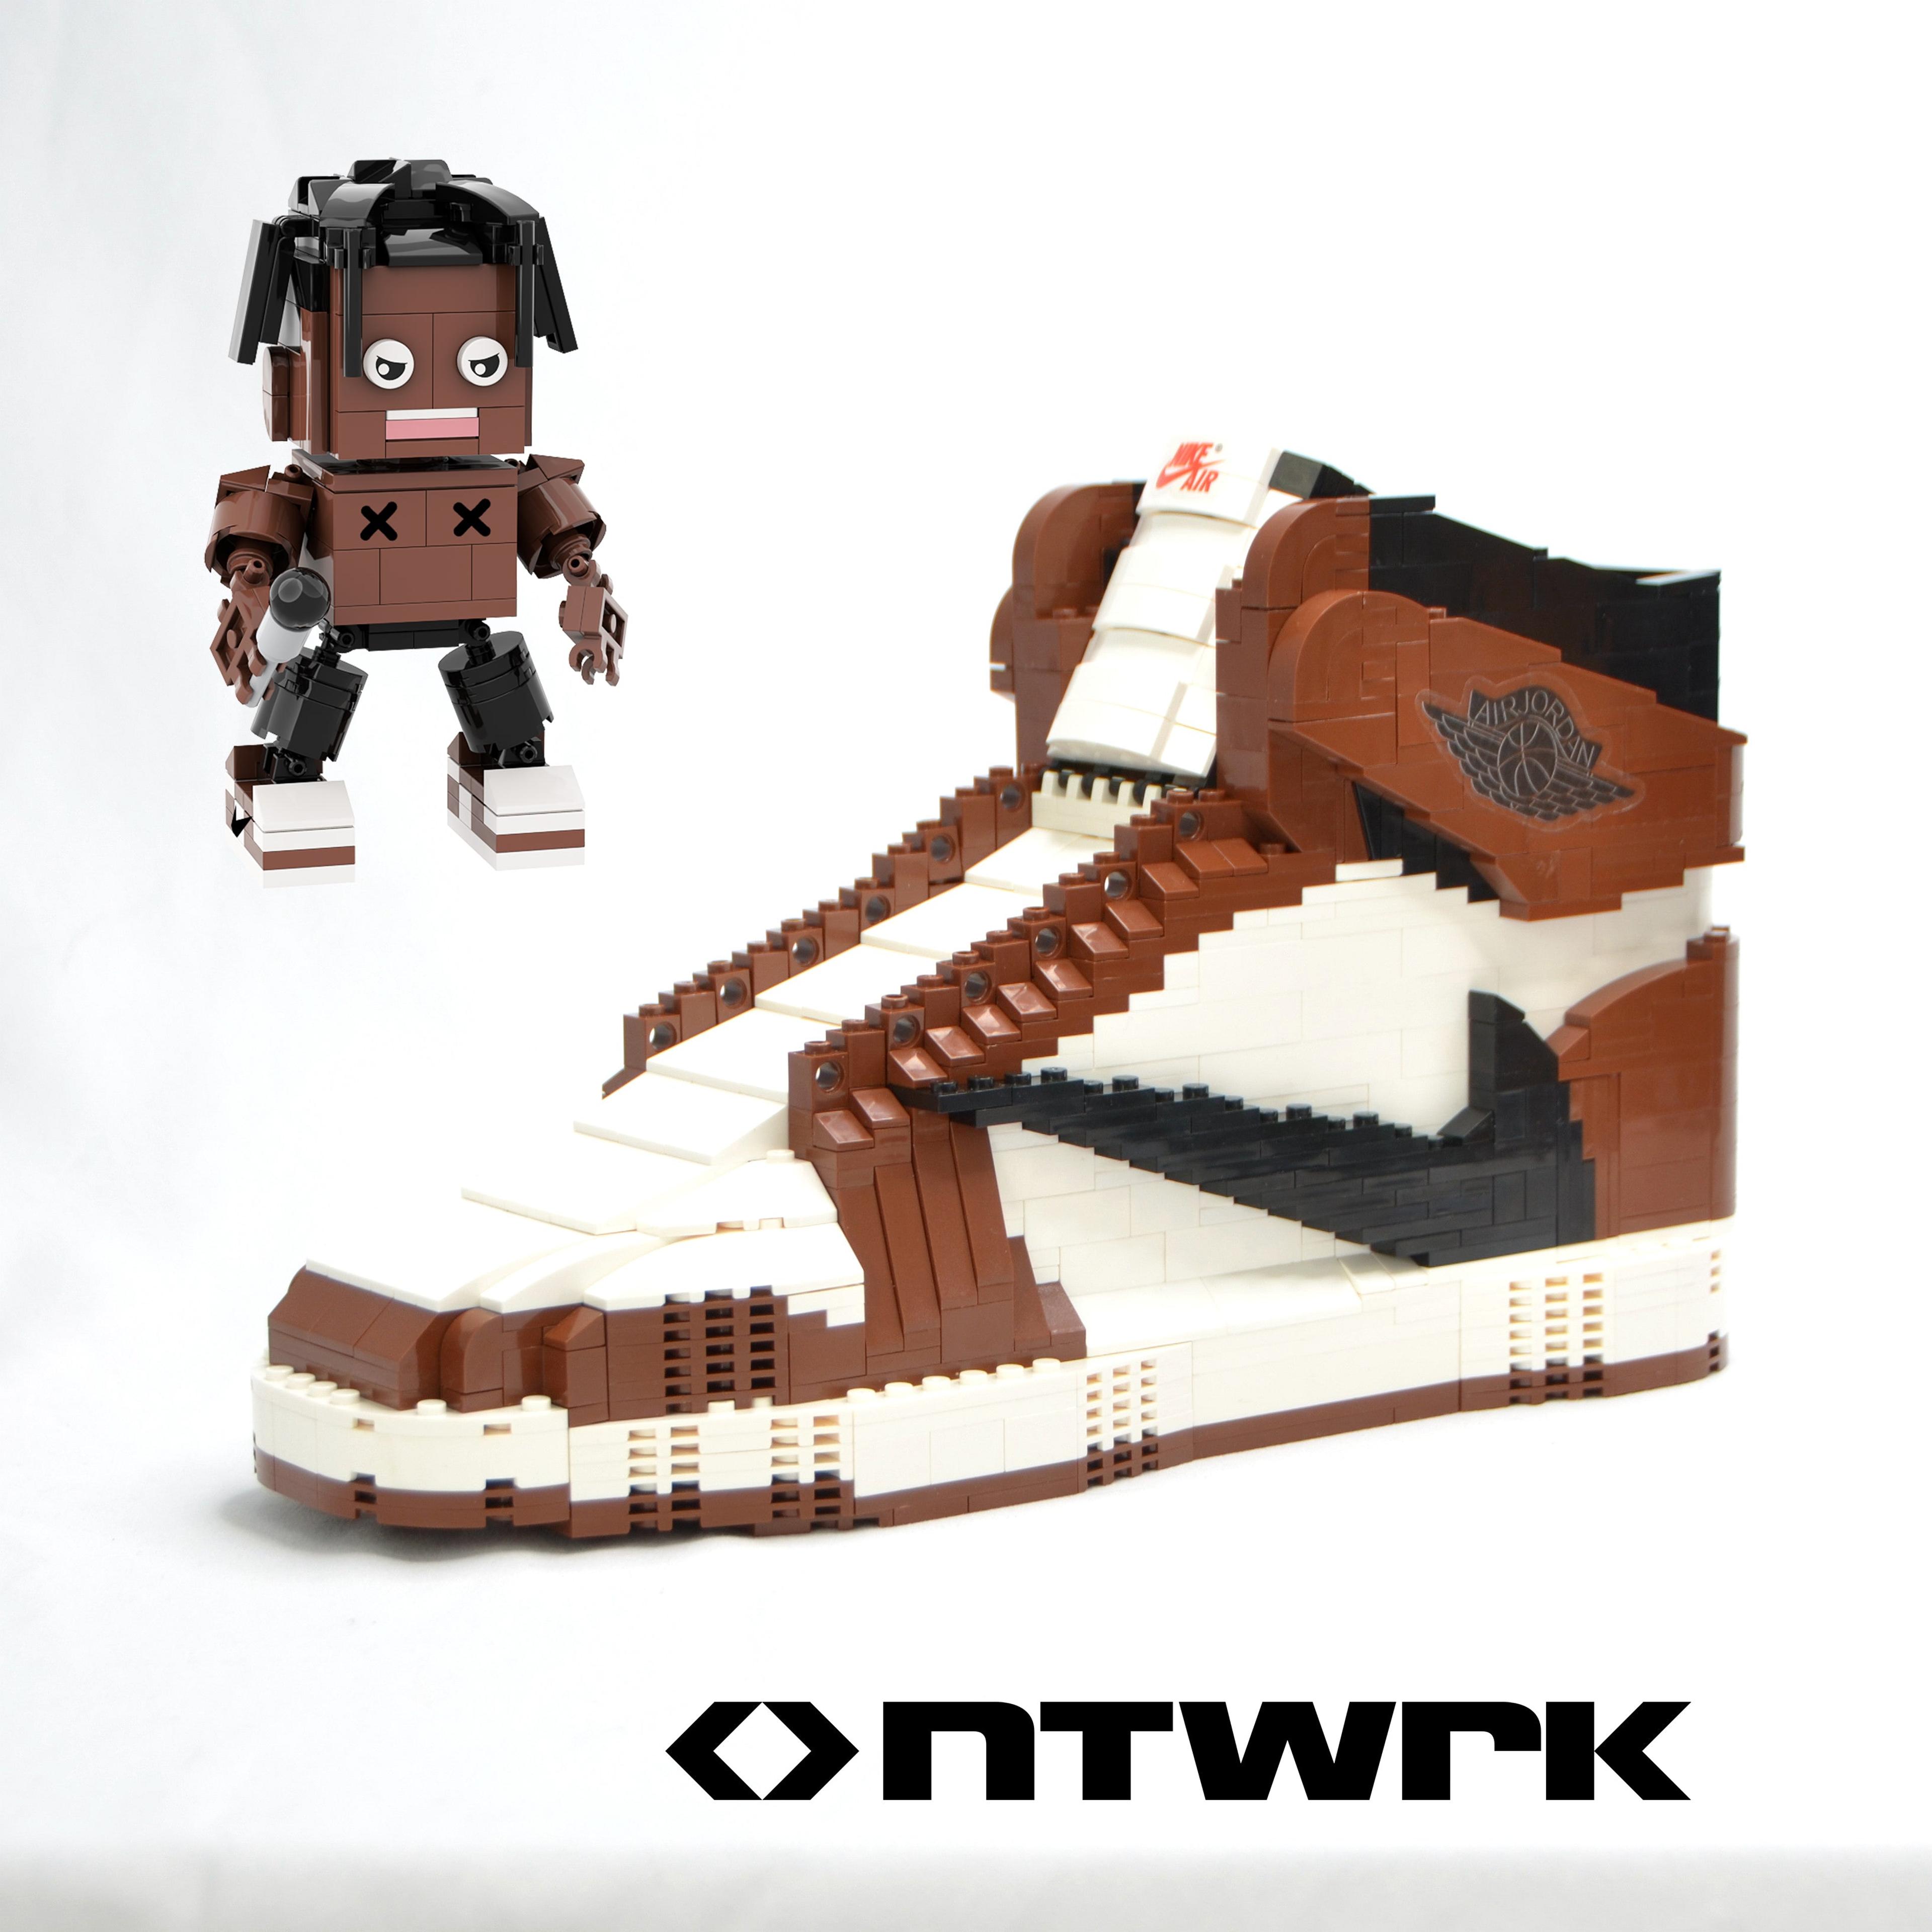 Travis Scott AJ1 Sneakers with Mini Travis Scott Display Figure 